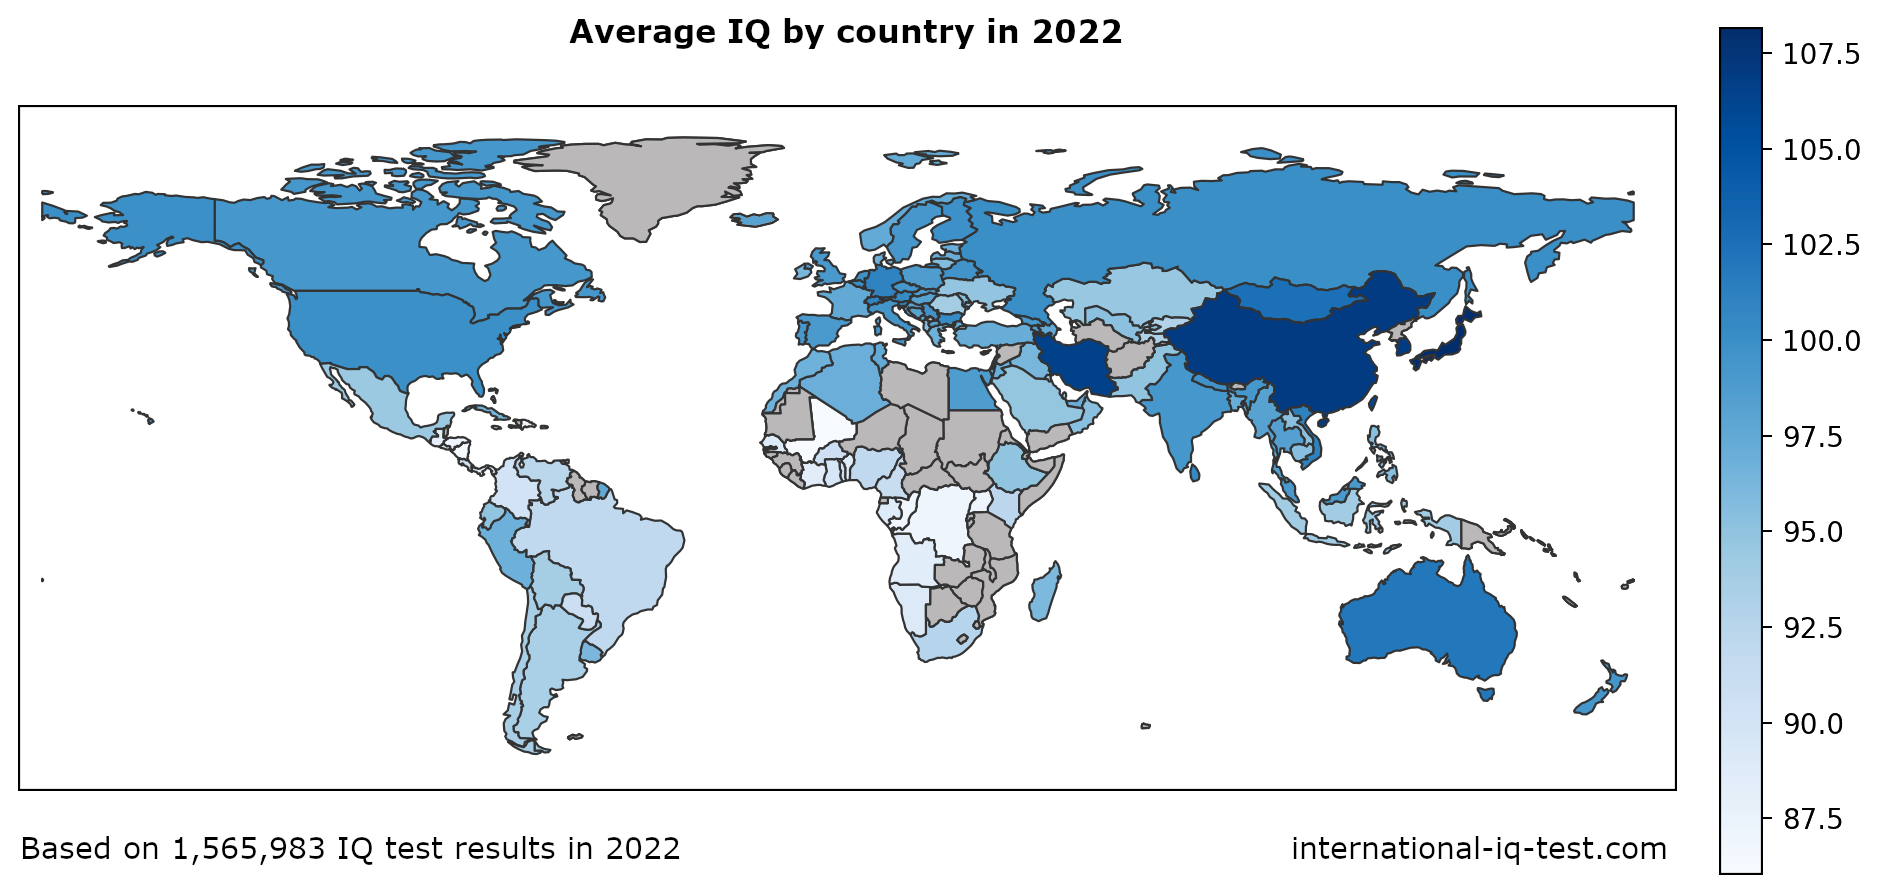 Peta dunia yang menunjukkan IQ rata-rata per negara pada tahun 2022 menggunakan warna biru dari yang paling terang hingga yang paling gelap